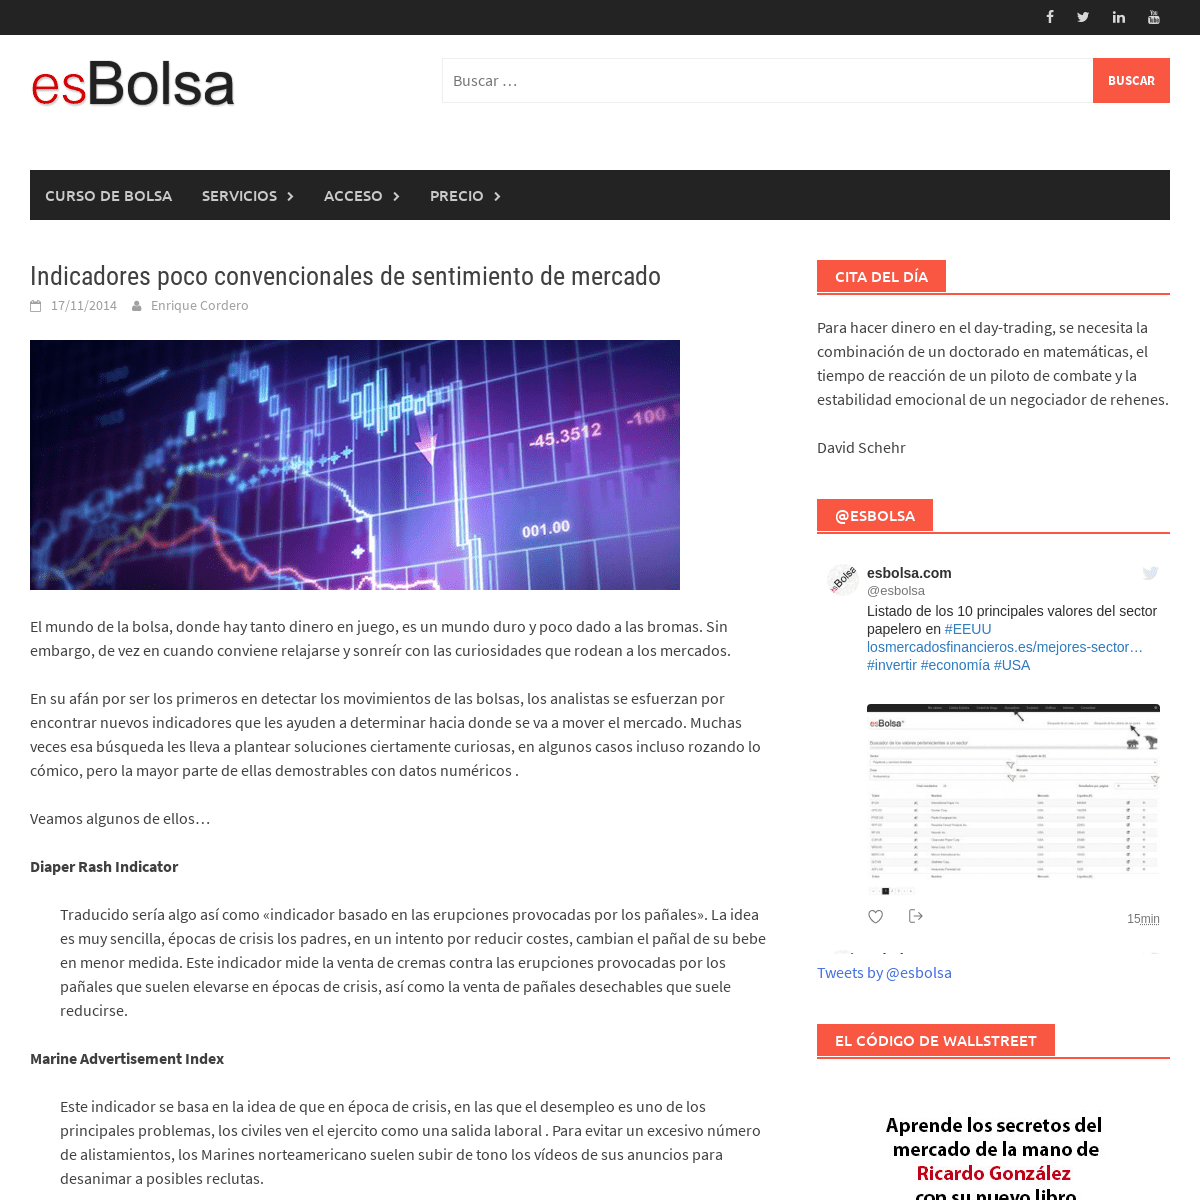 A complete backup of https://esbolsa.com/blog/analisis-tecnico/indicadores-poco-convencionales/